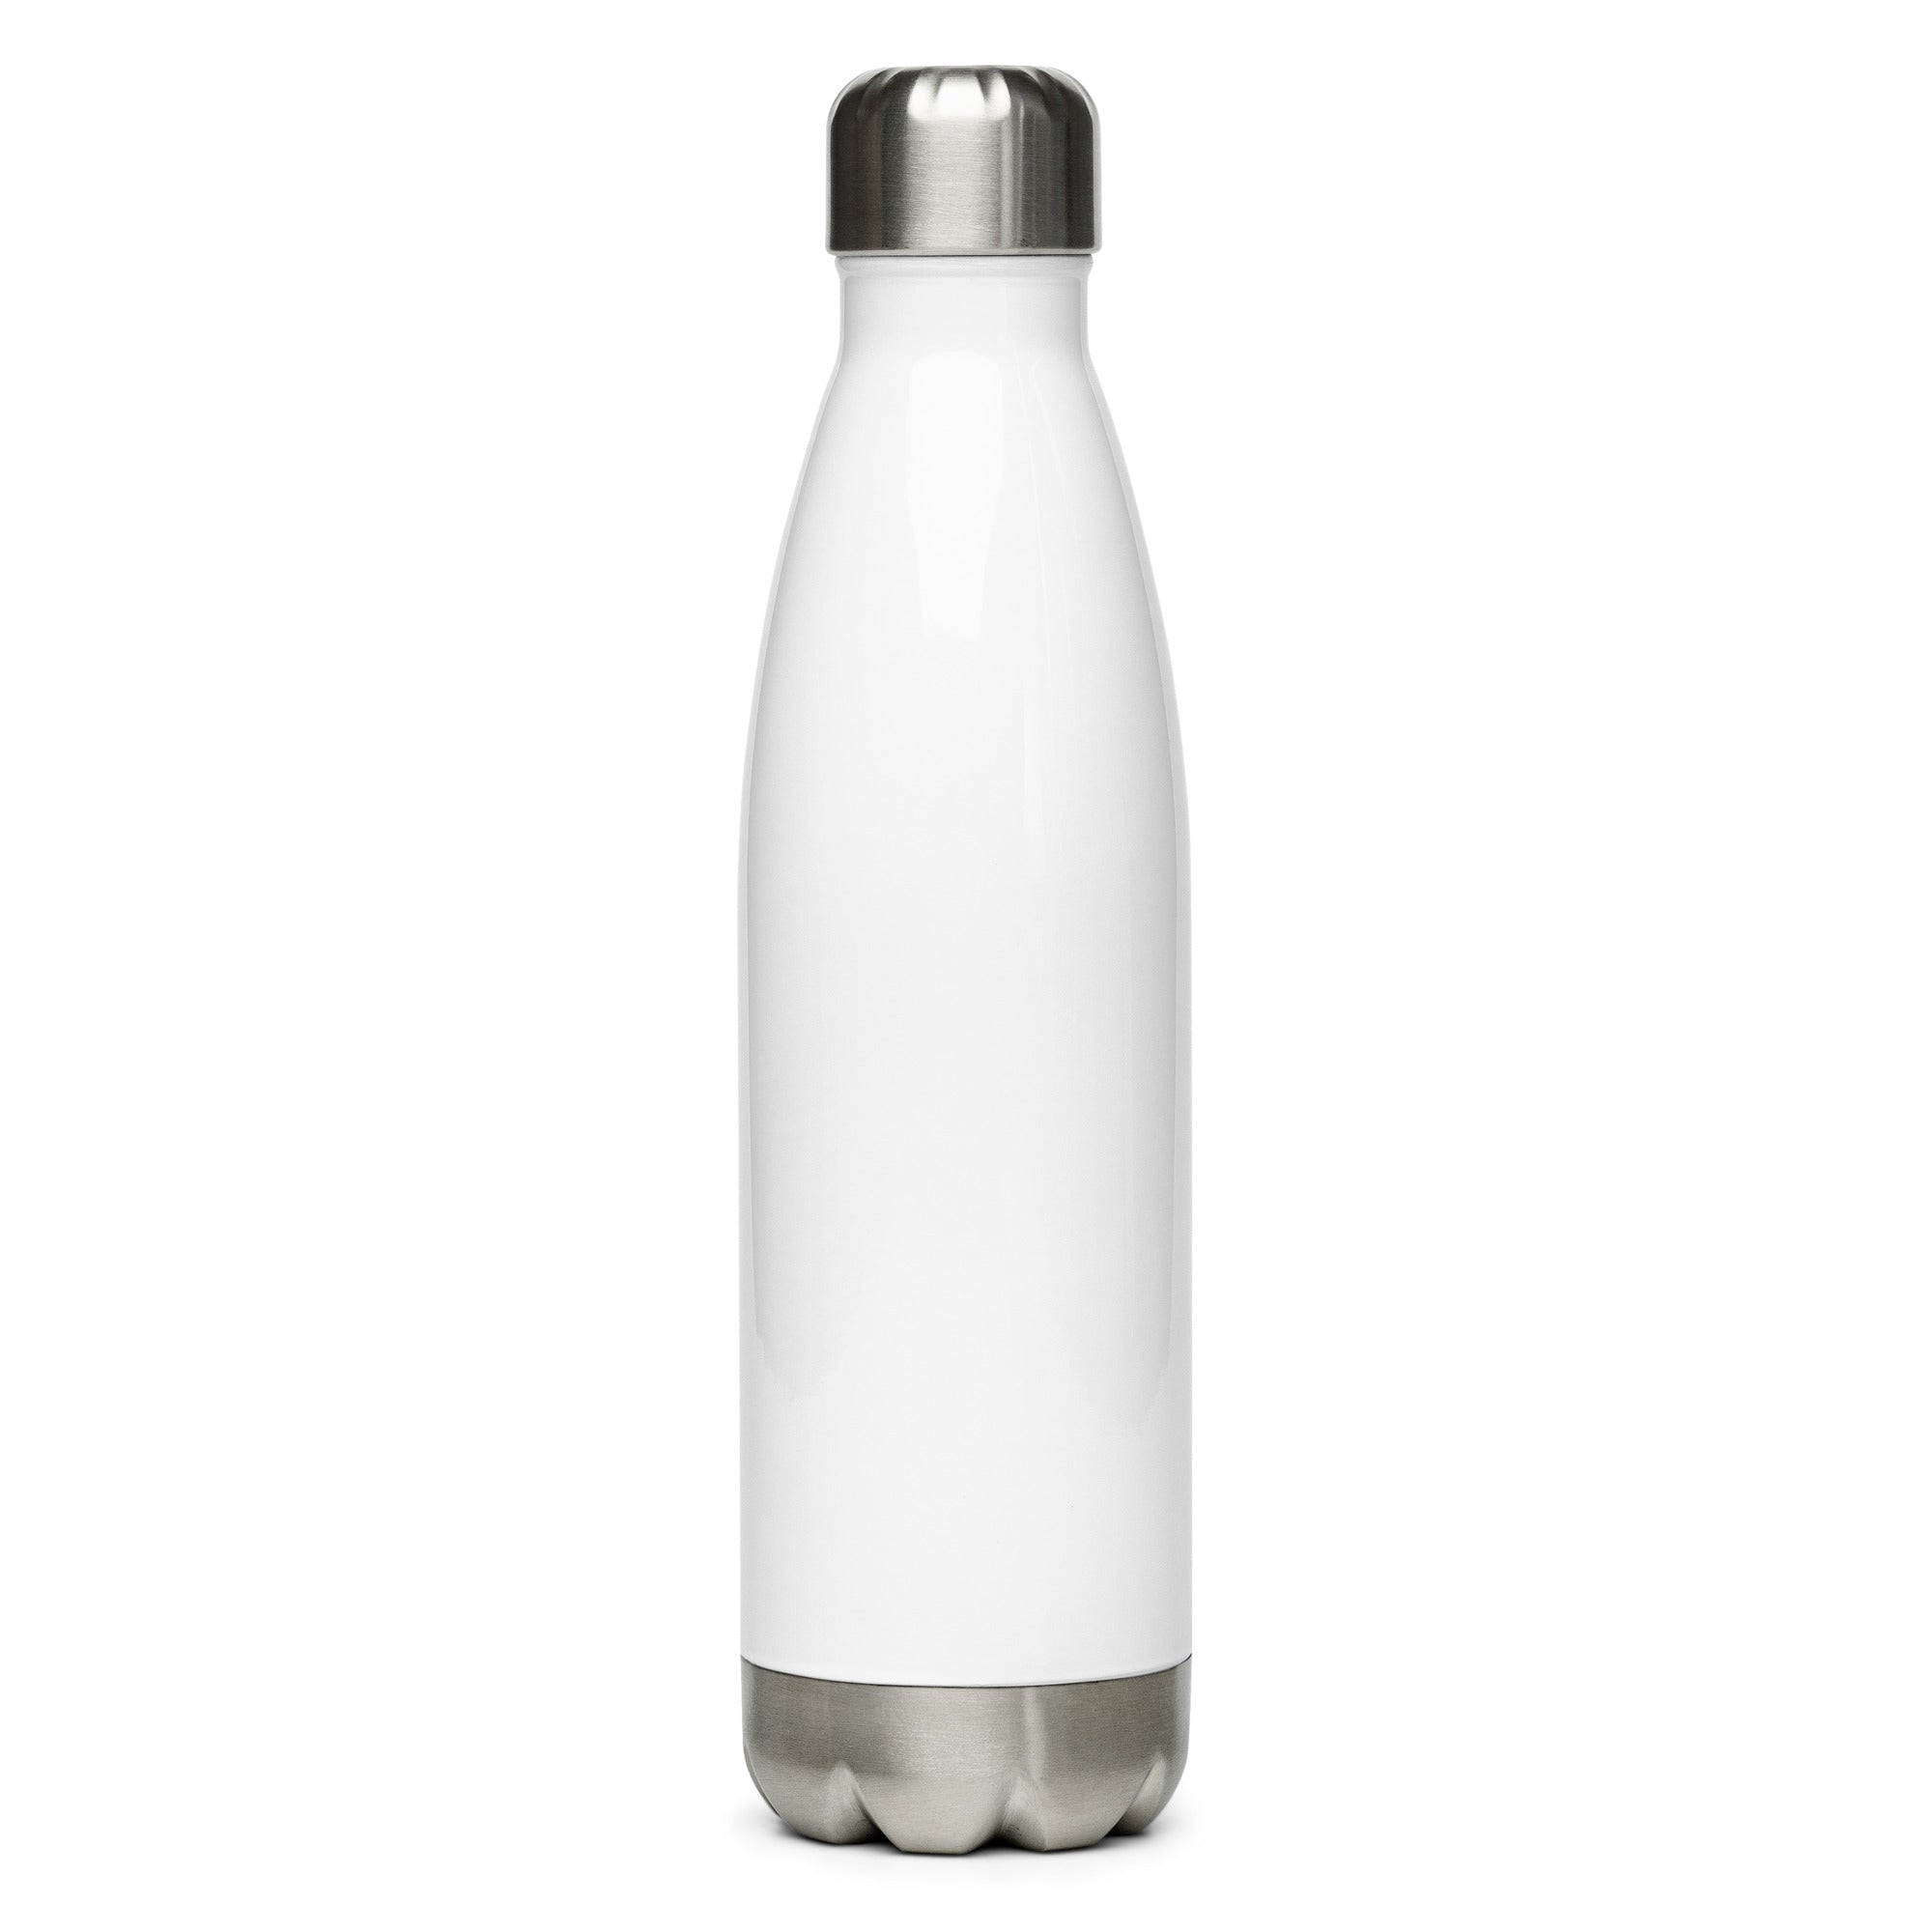 Stainless steel water bottle - Matthew 11:28